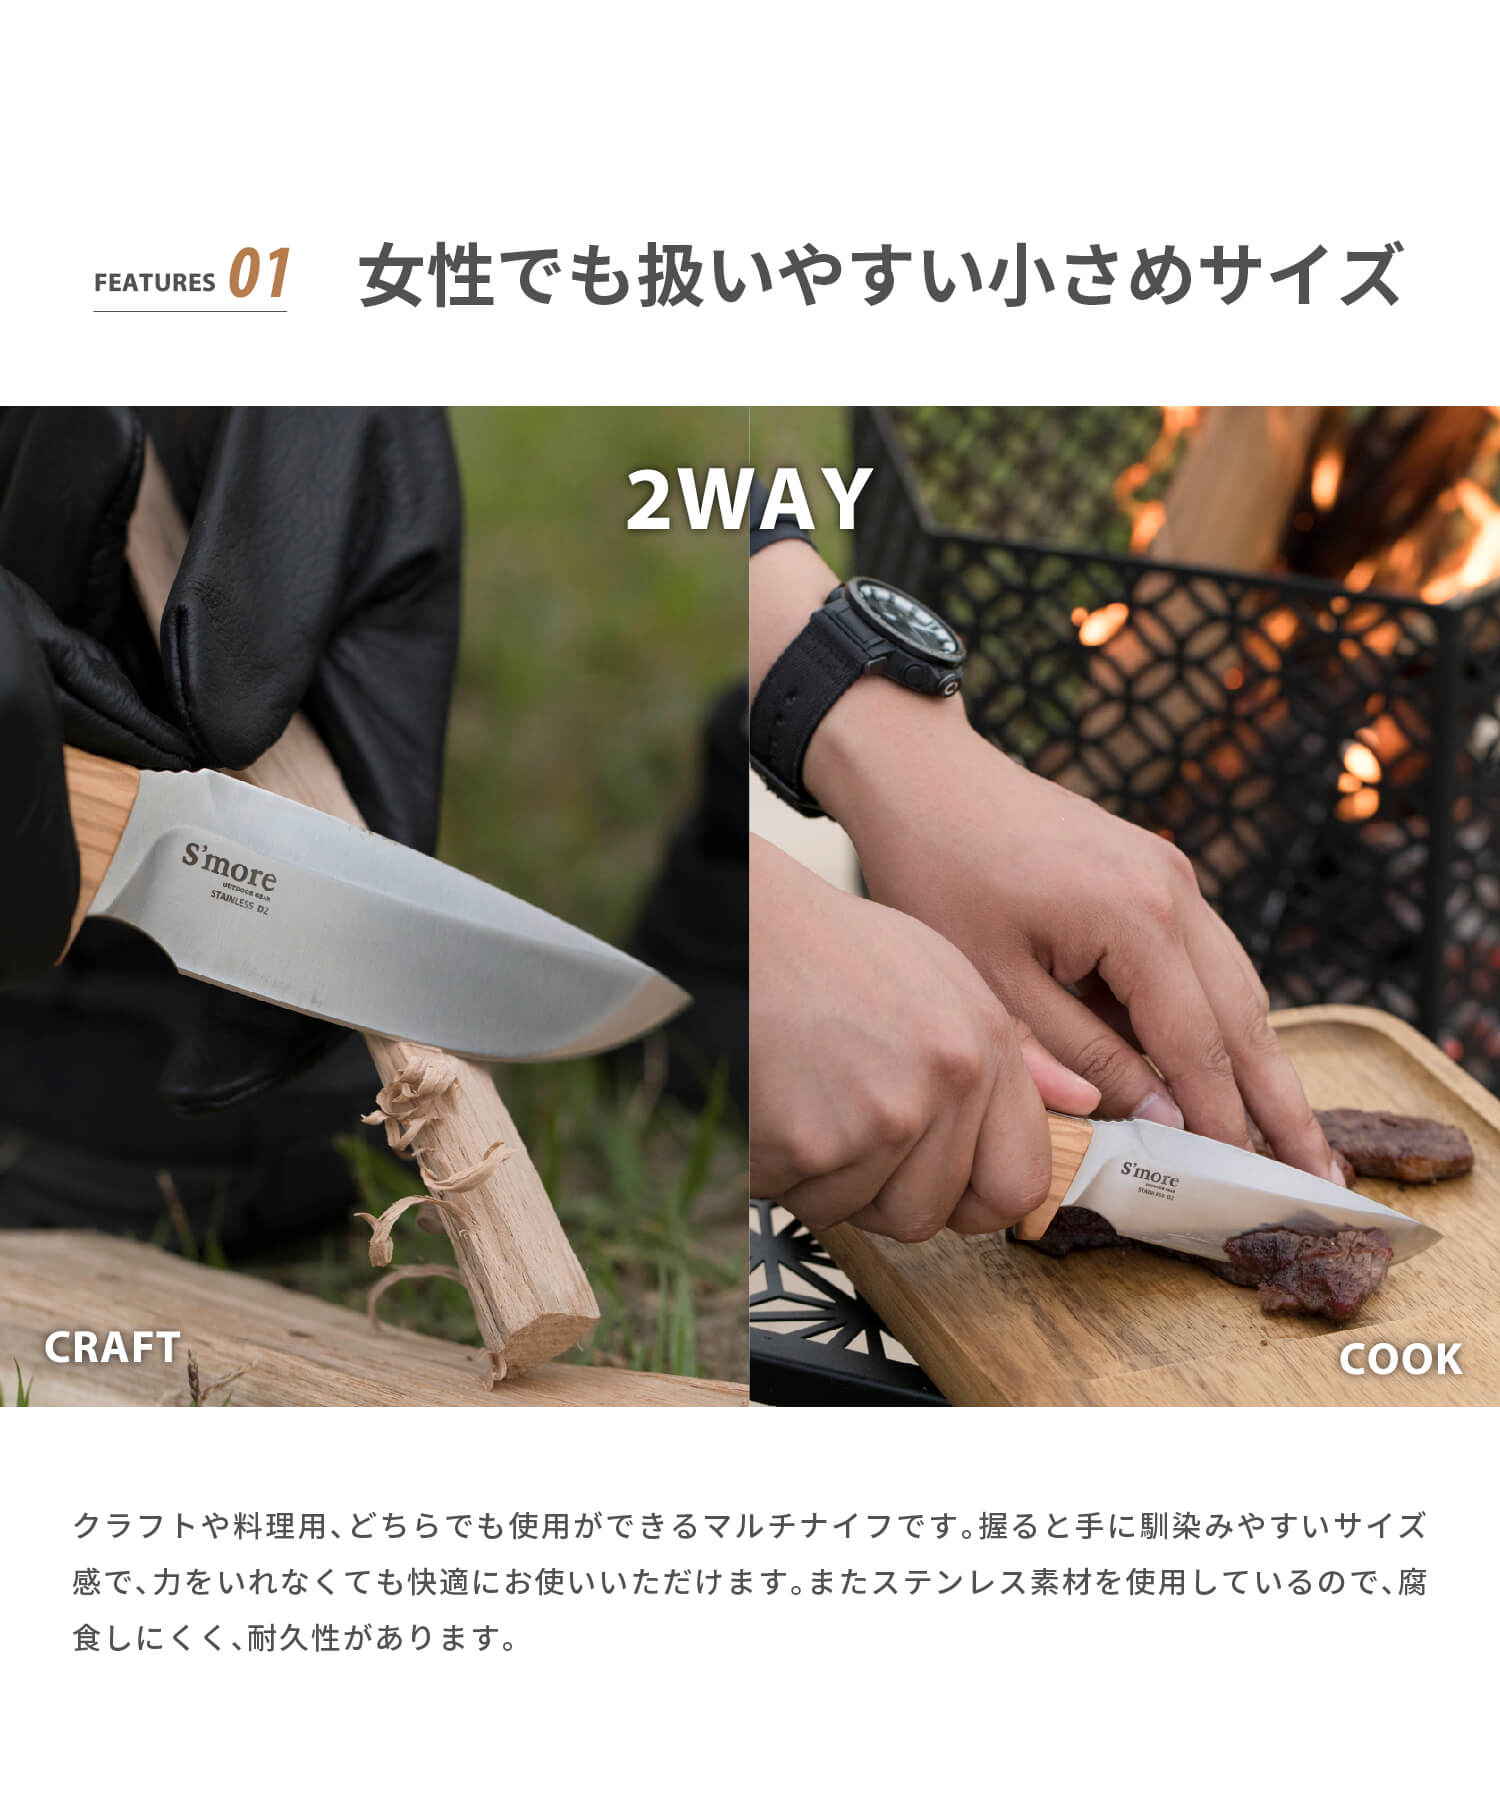 スモア New!! masse knife（マッスナイフ）